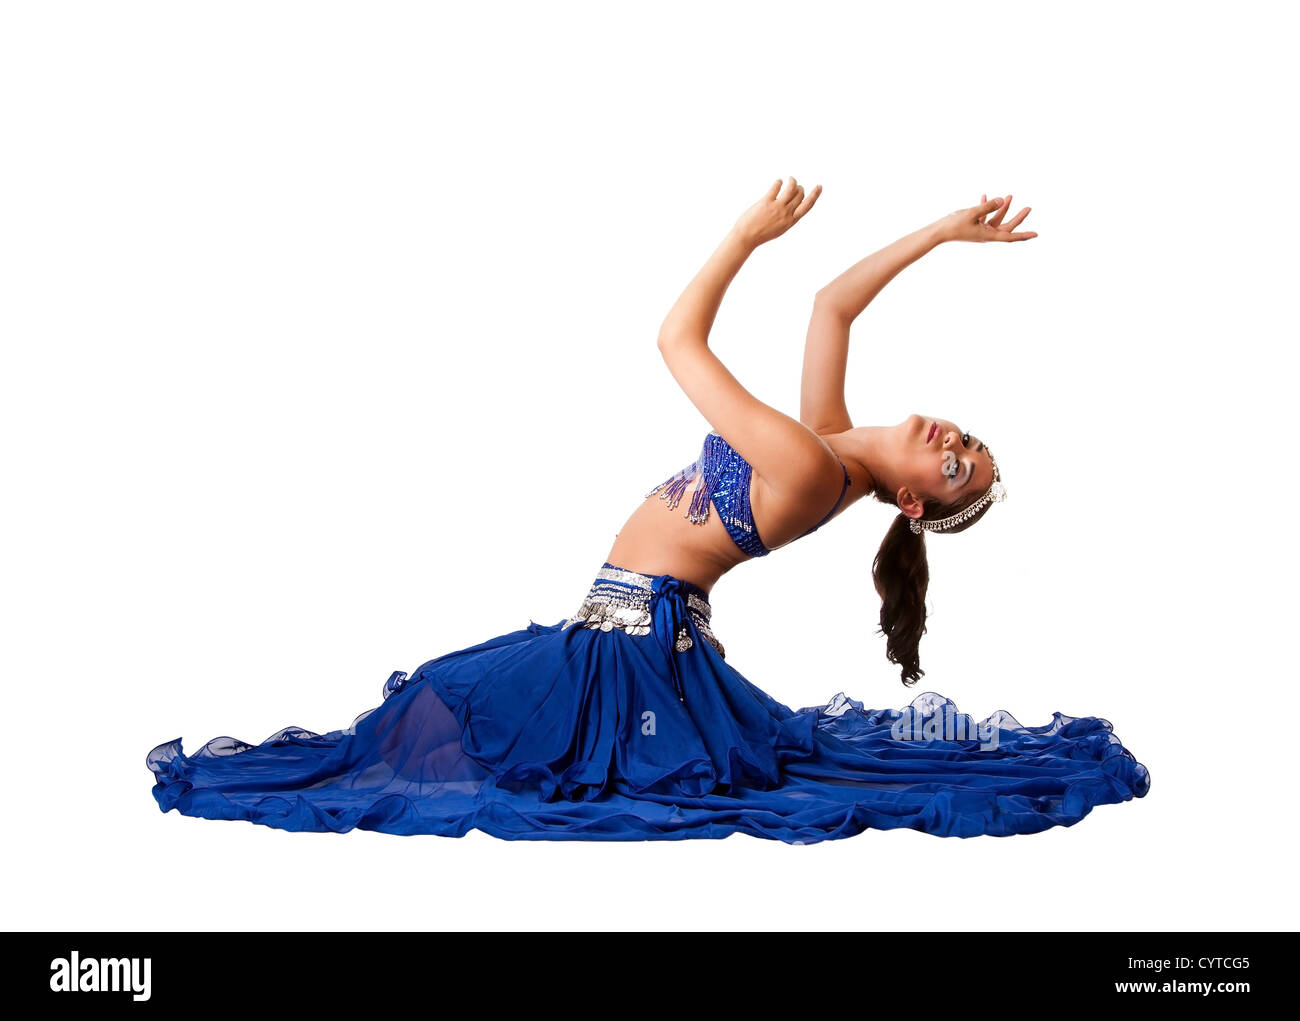 Schöne israelische ägyptischen libanesischen Middle Eastern Bauchtänzerin Performer in blauer Rock und BH mit Armen in Luft sitzen und biegen nach hinten, isoliert. Stockfoto